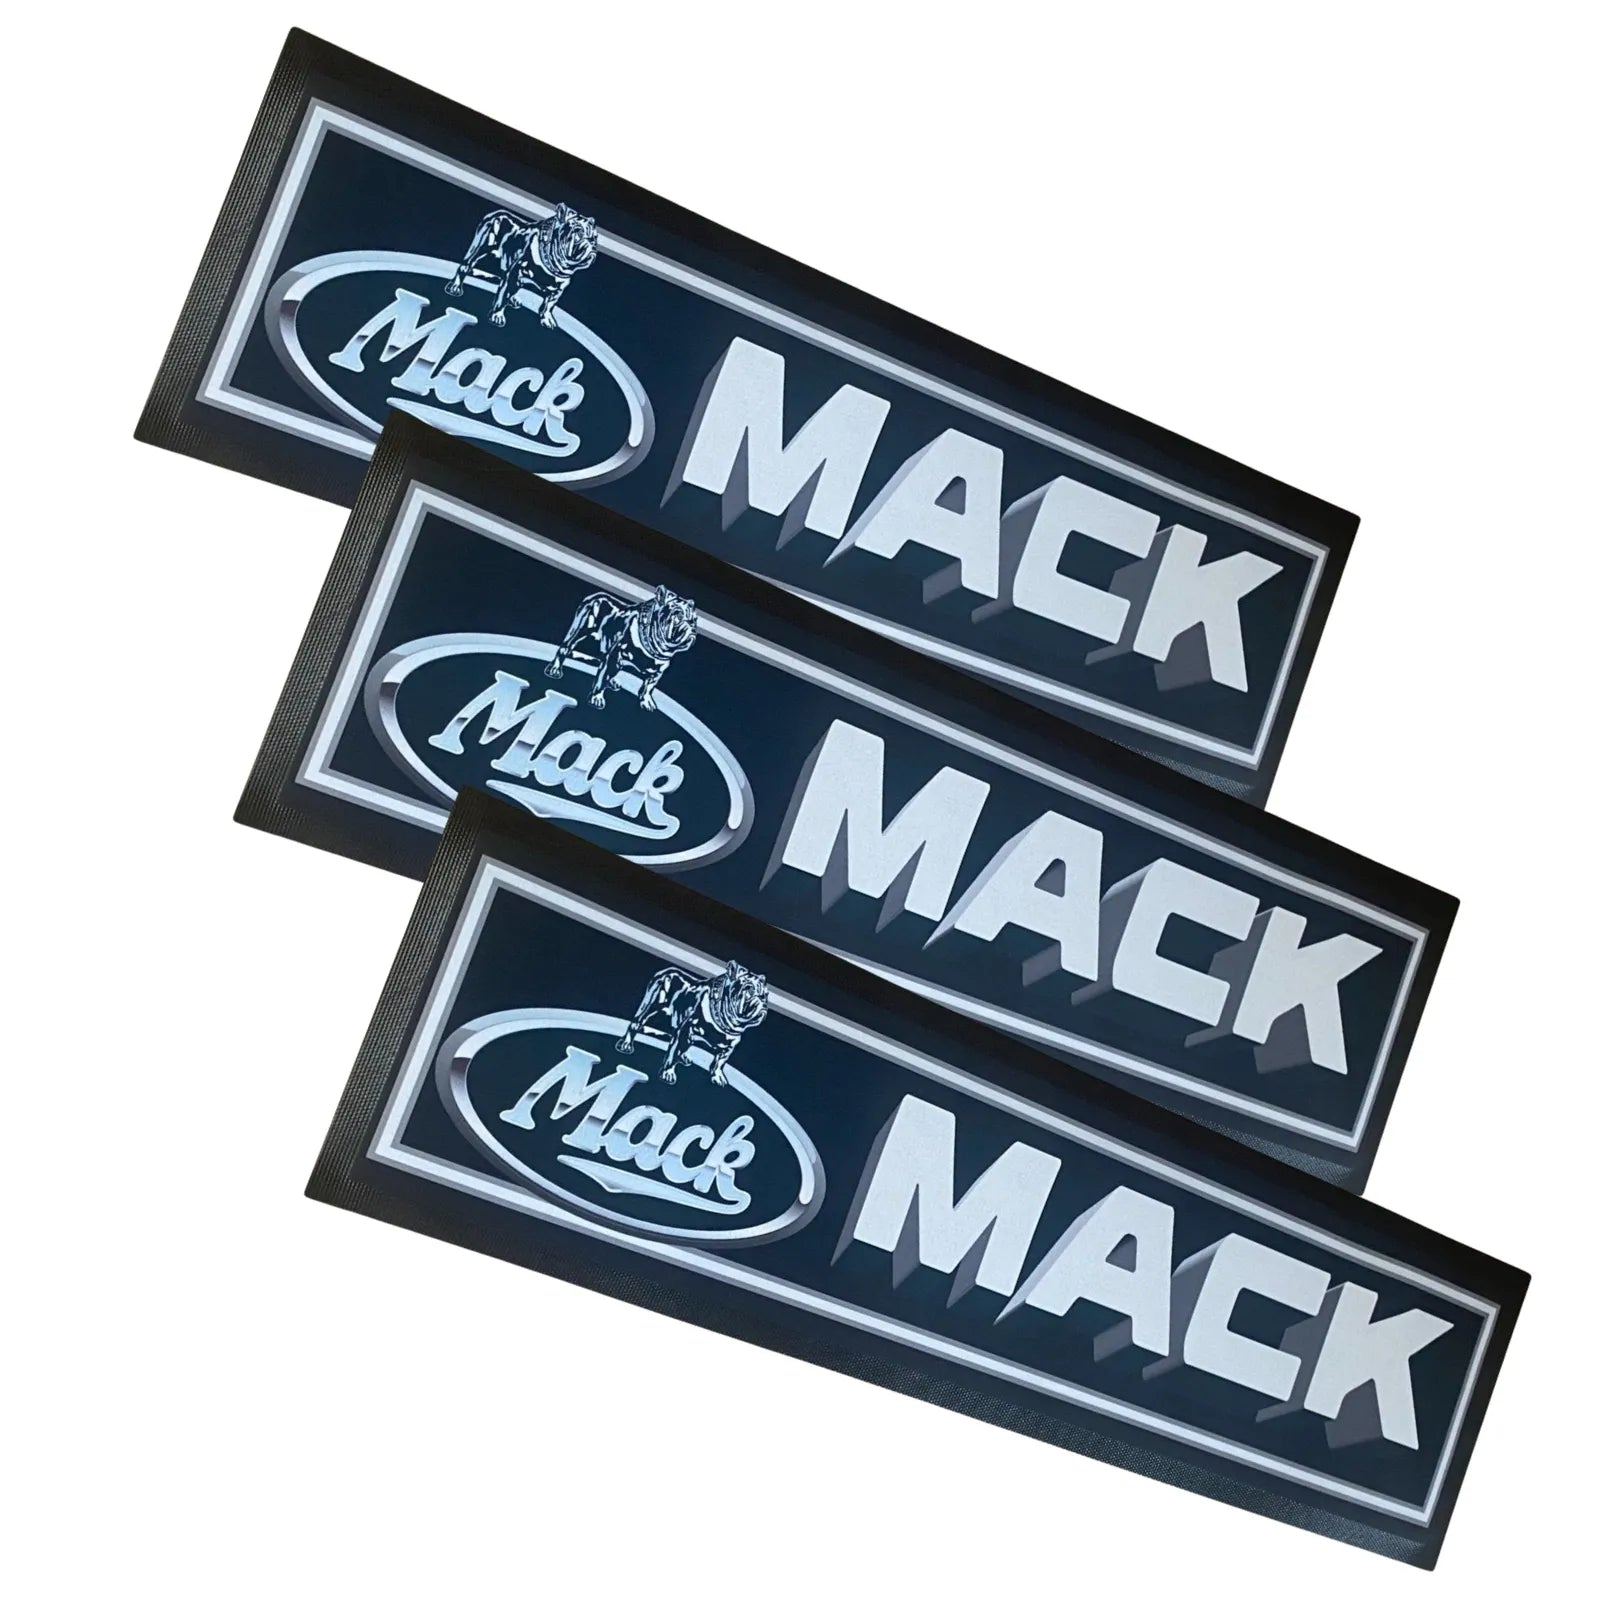 Mack Premium Rubber-Backed Bar Mat Runner - KING CAVE